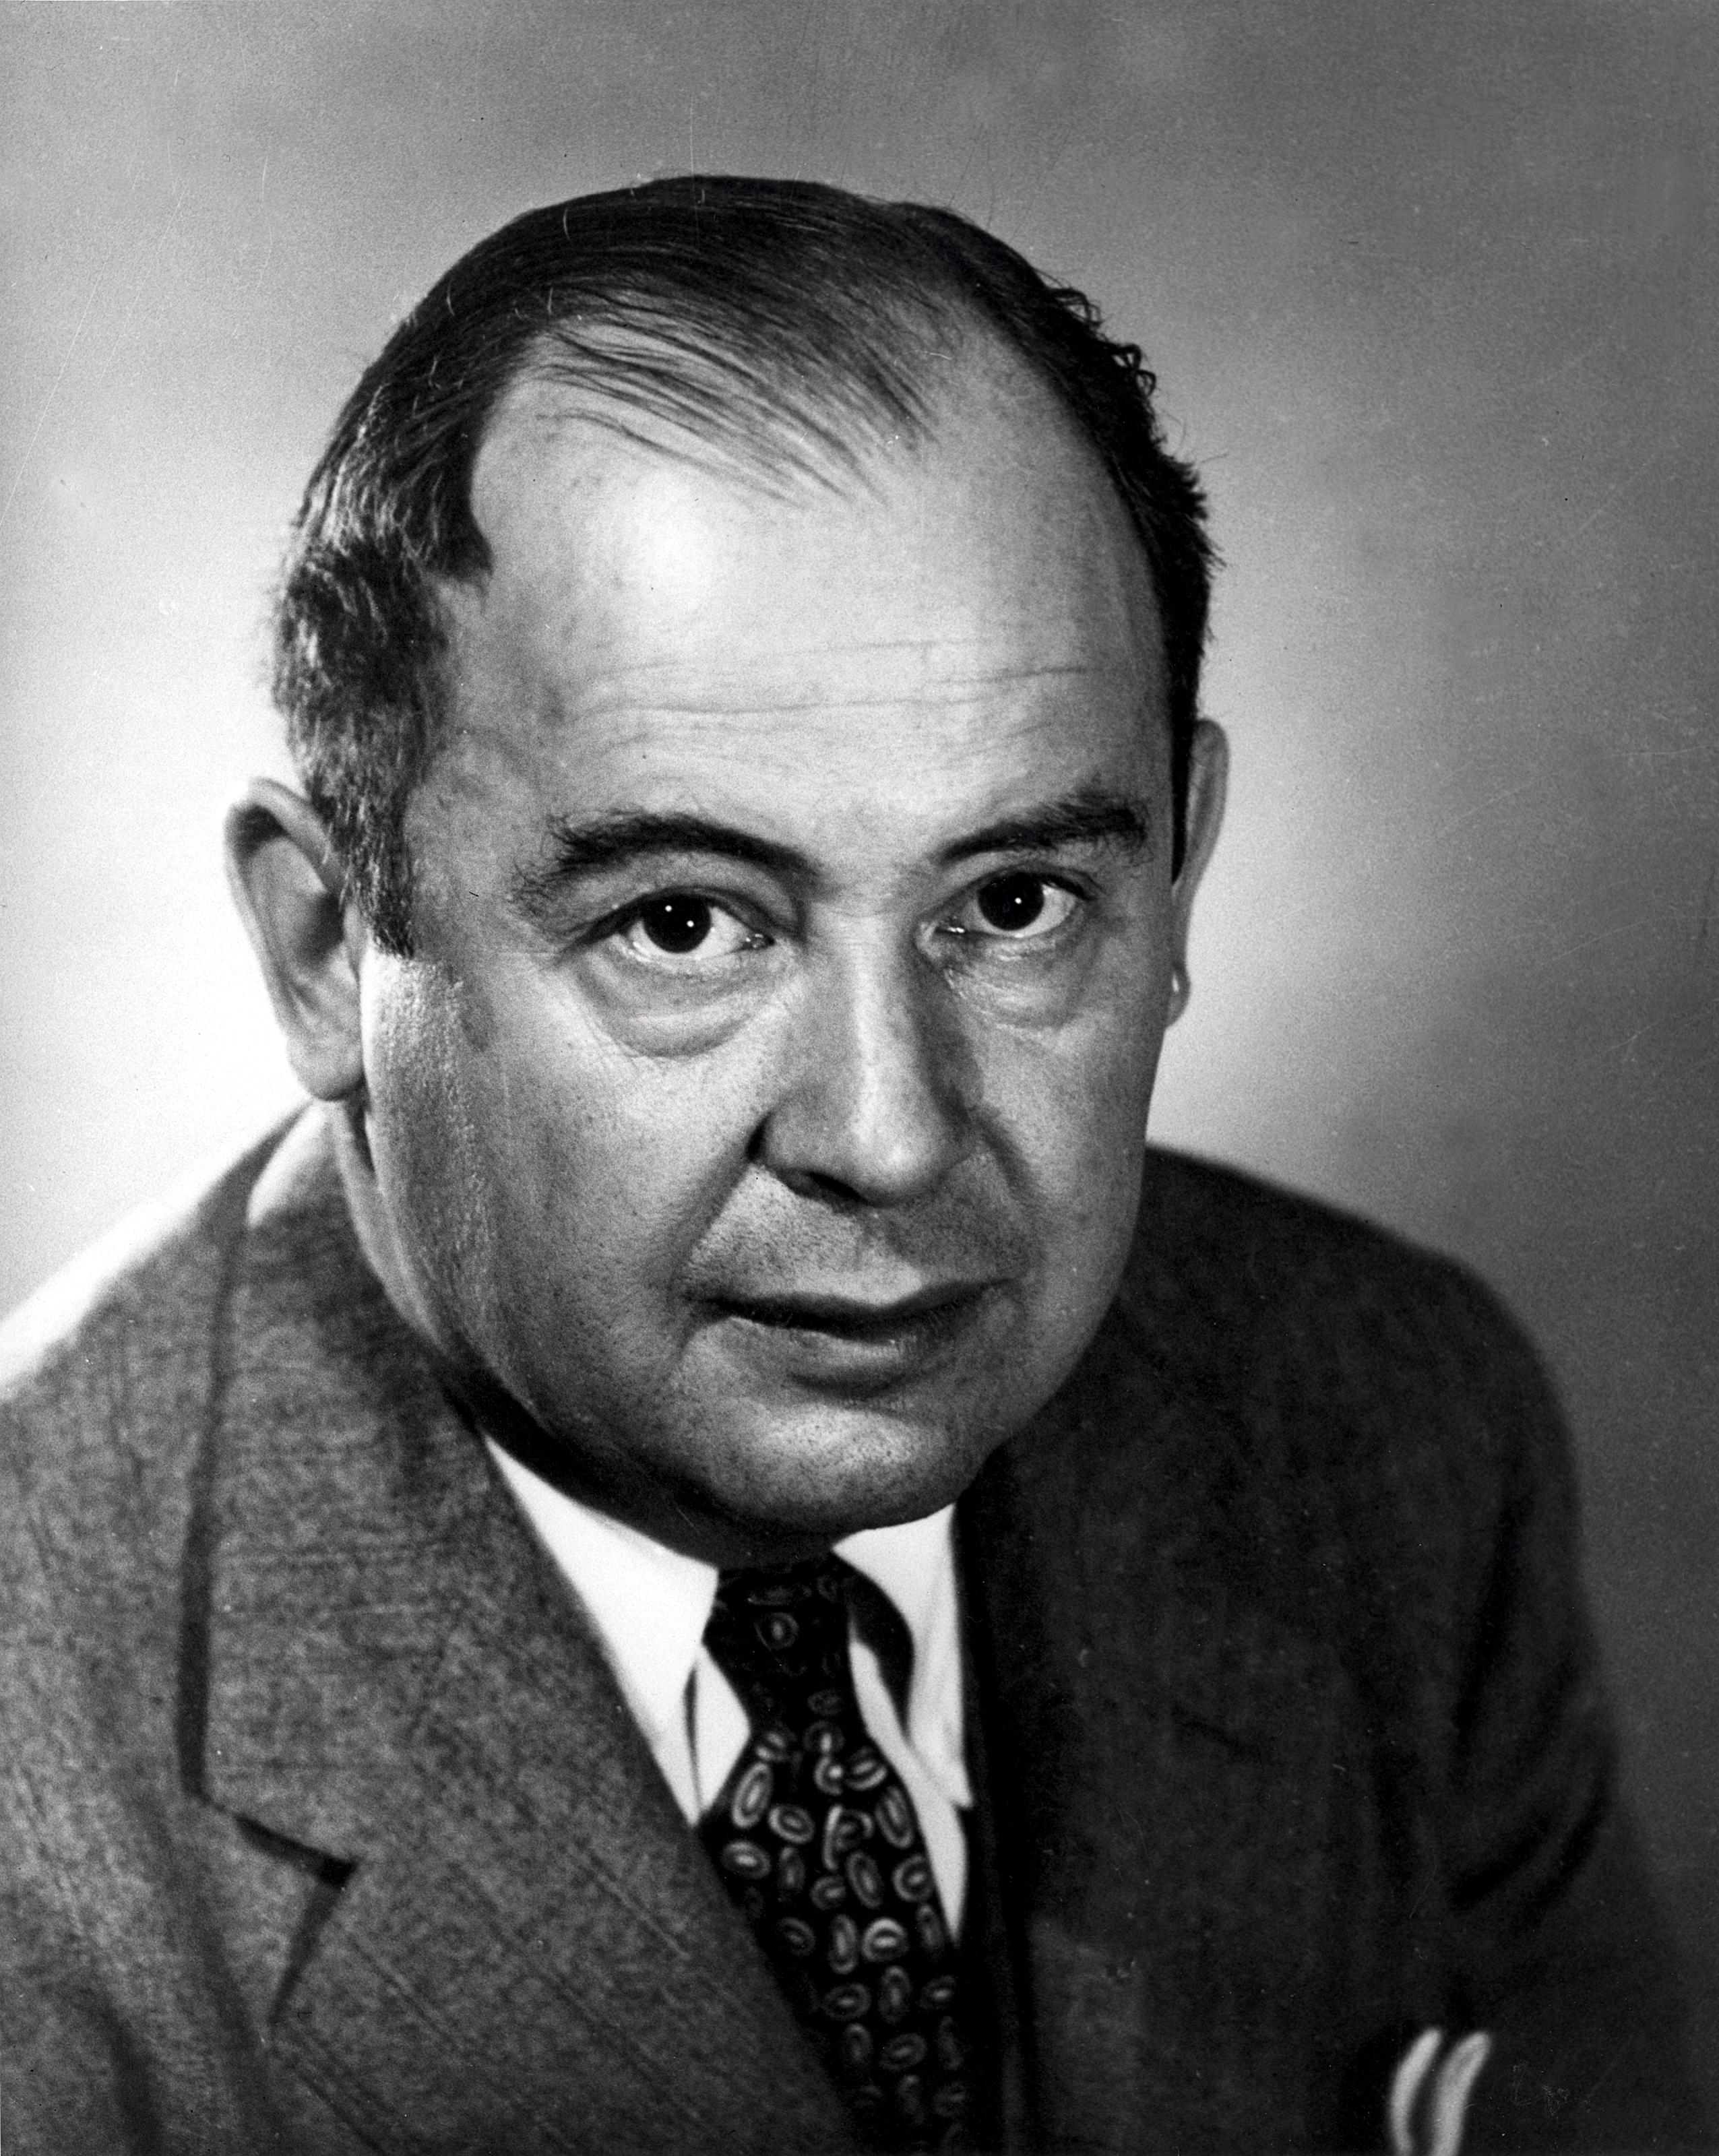 Altes schwarzweiss Foto von John von Neumann.